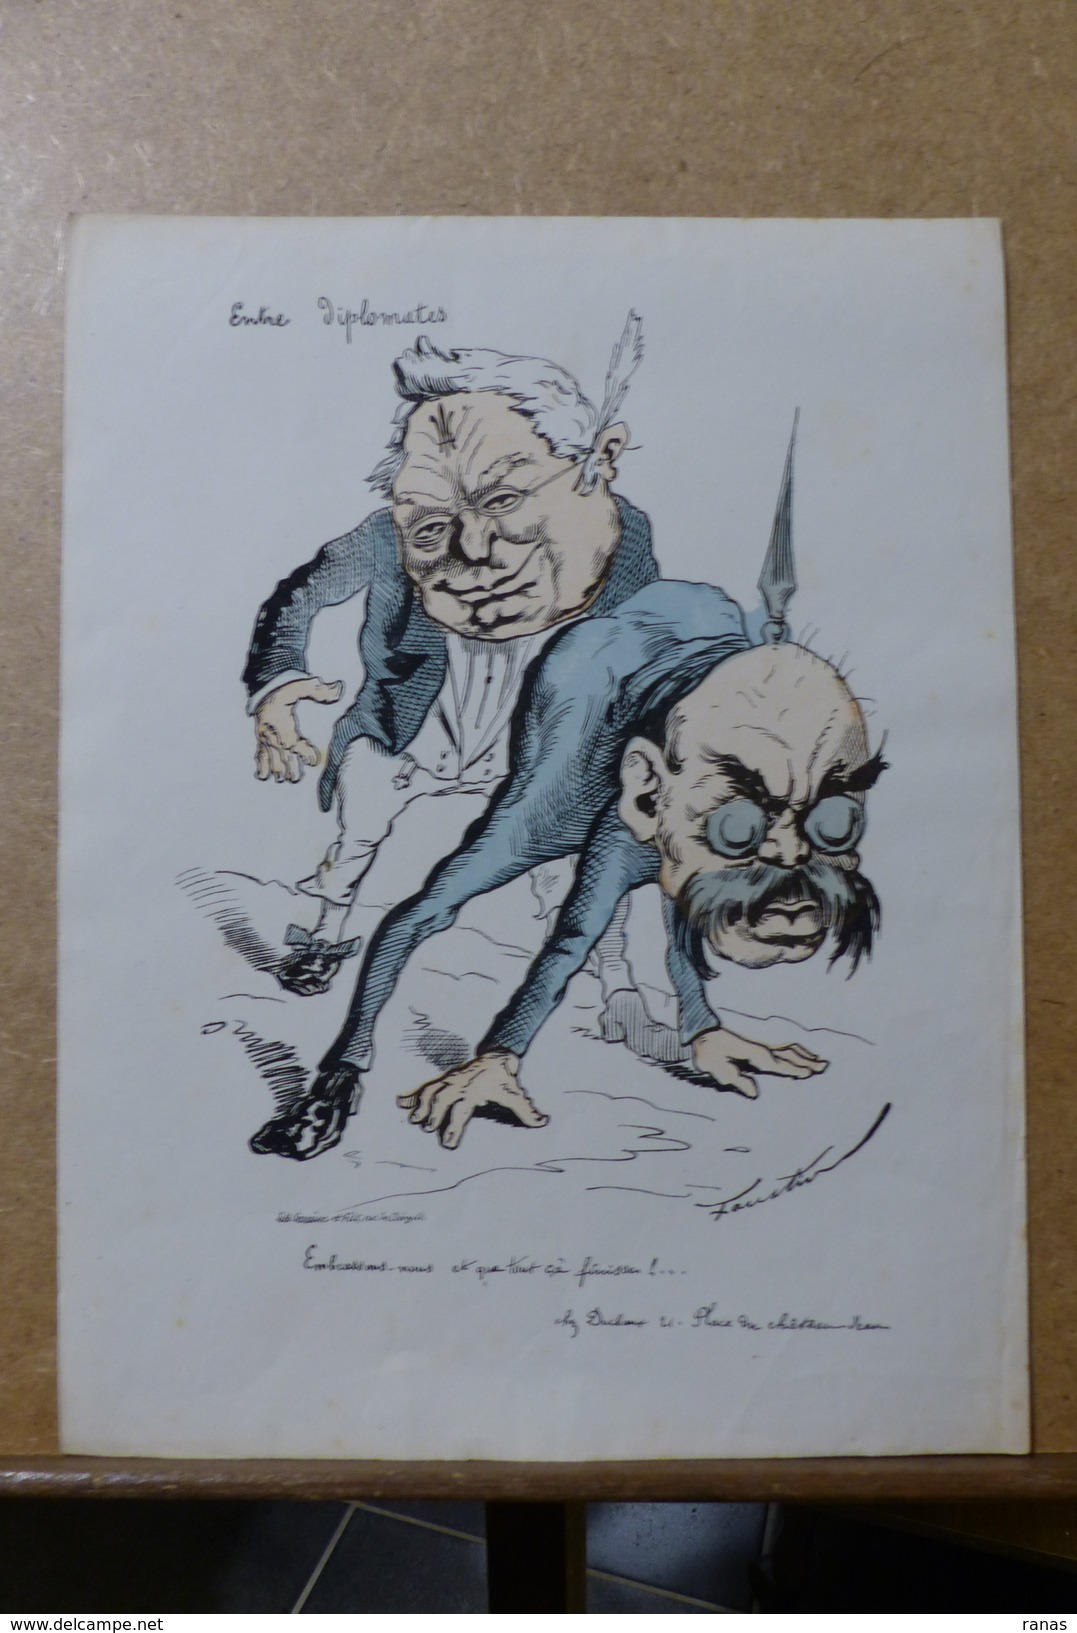 Estampe Gravure Satirique Caricature D'époque 1870  Bismarck Thiers Faustin 36 X 27,5 - Stiche & Gravuren